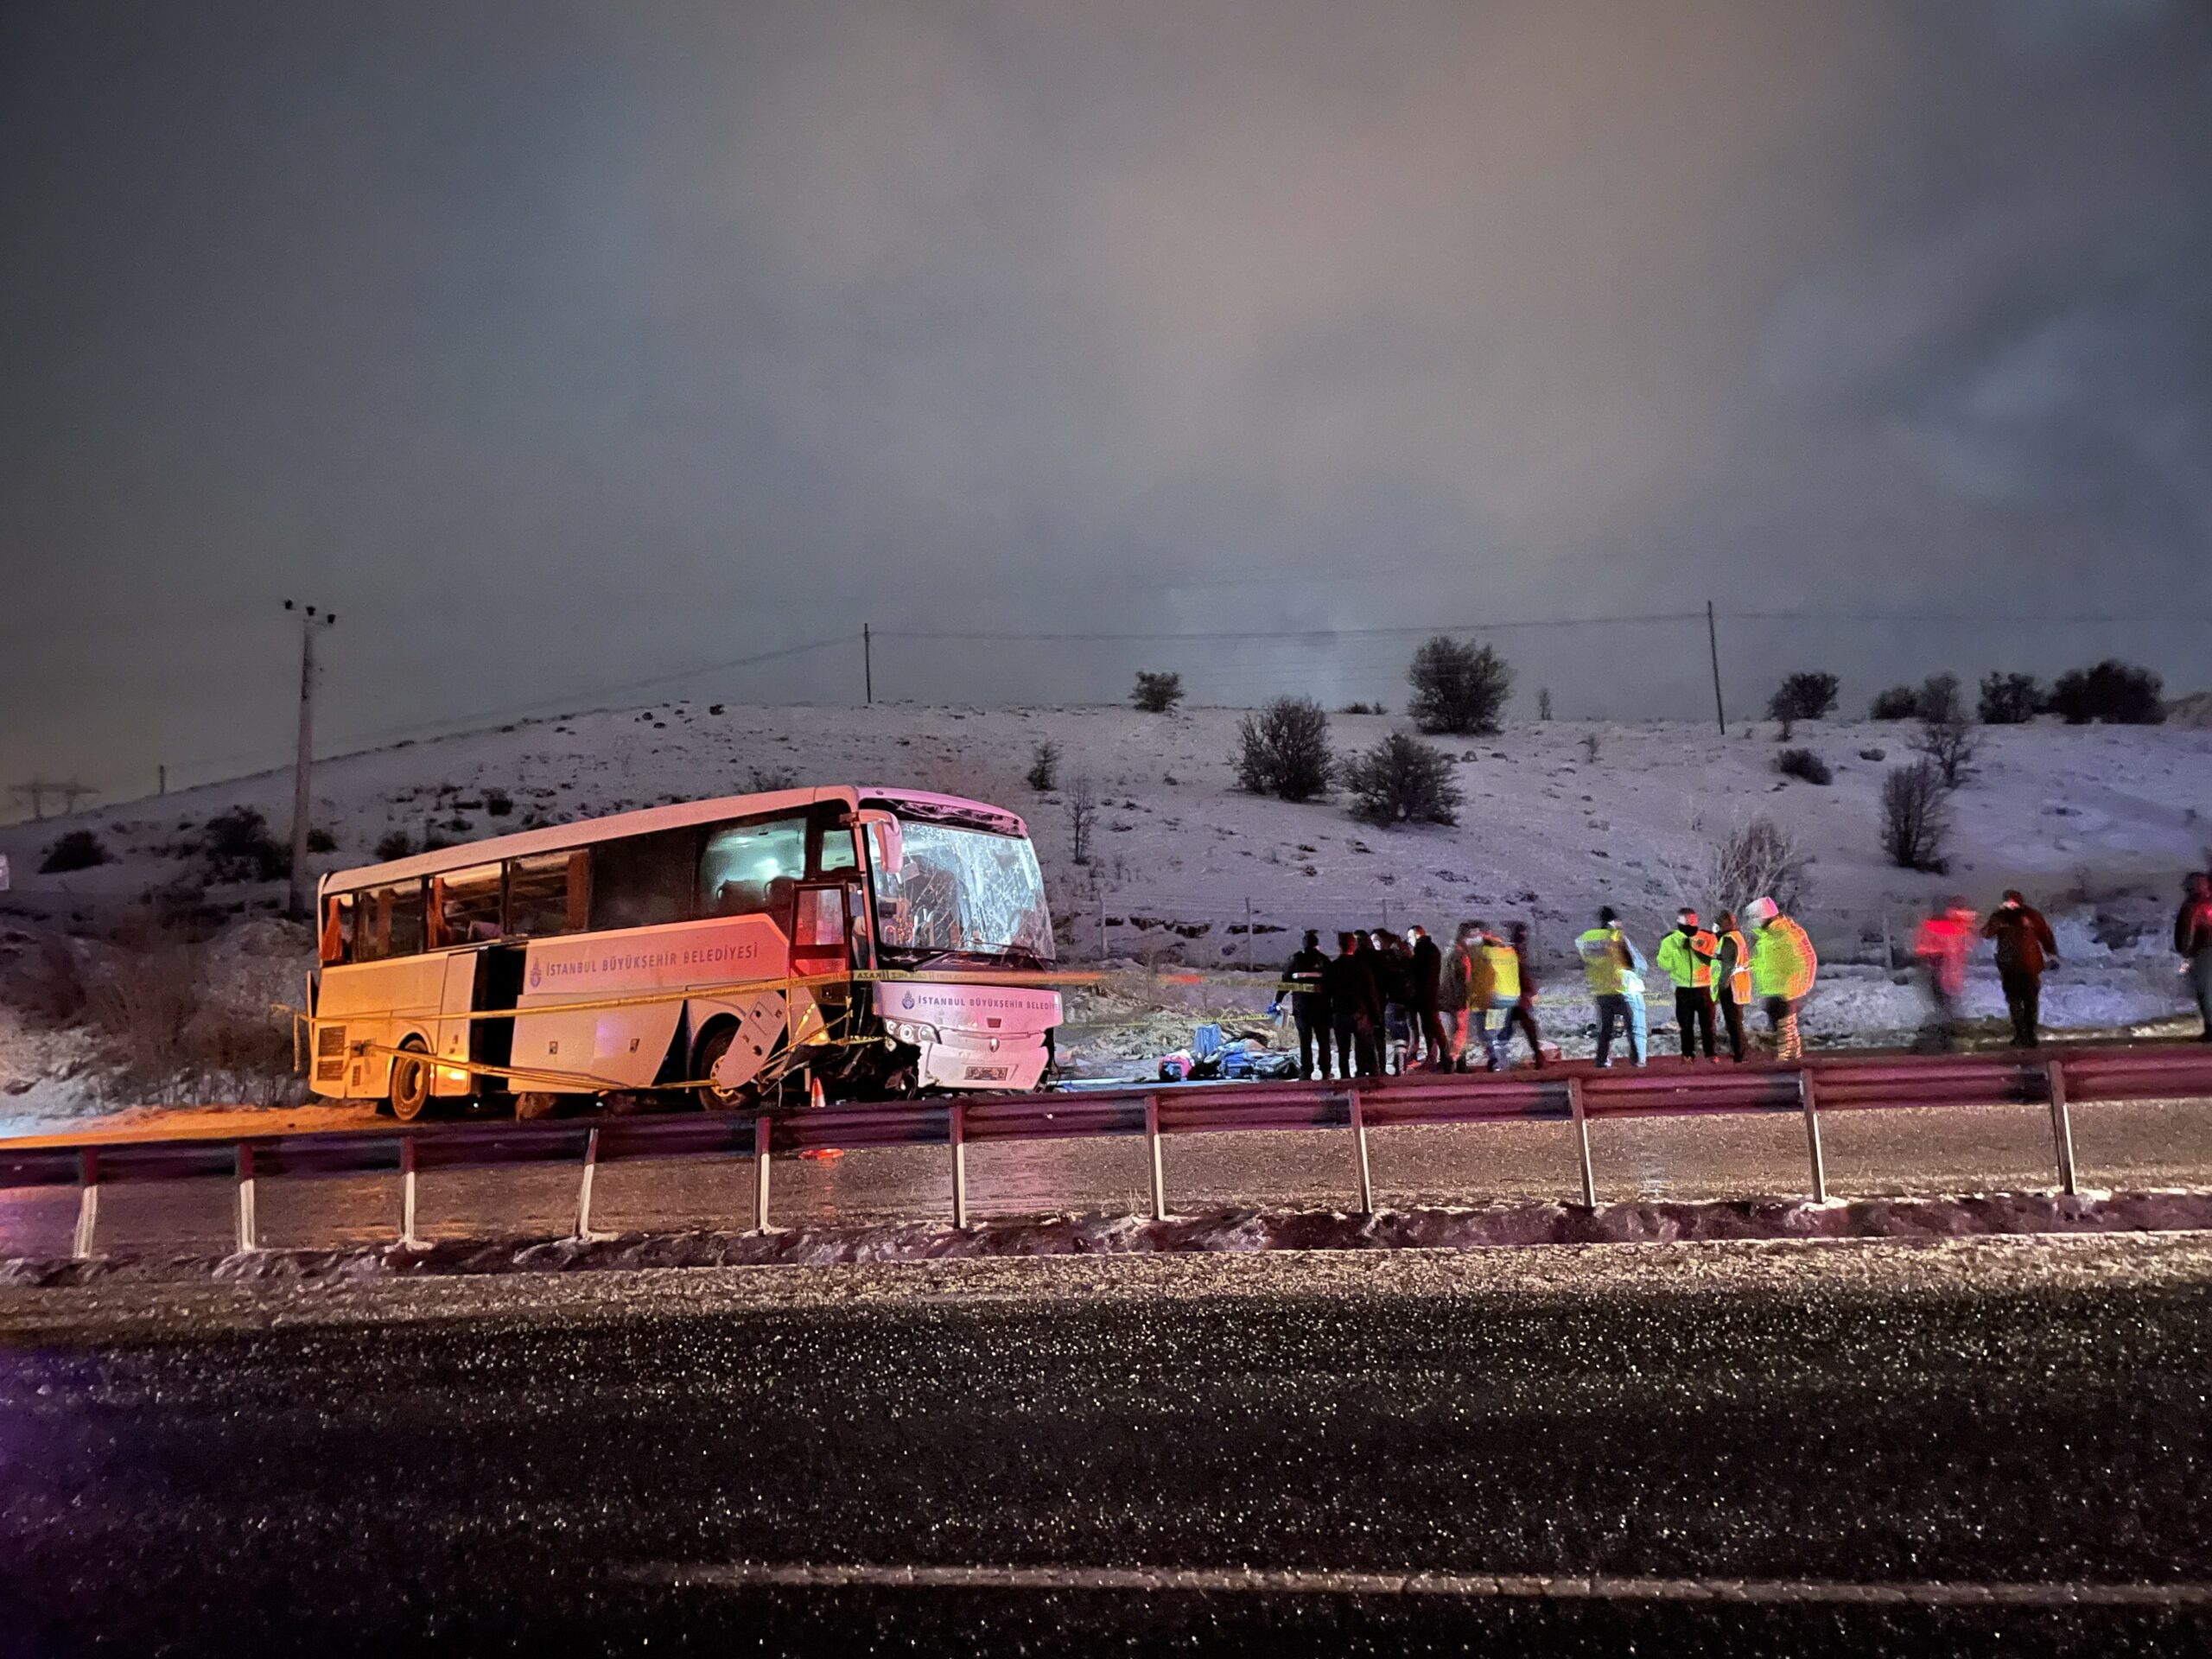 İBB’ye ait yolcu otobüsü devrildi: 2 kişi hayatını kaybetti, çok sayıda yaralı var